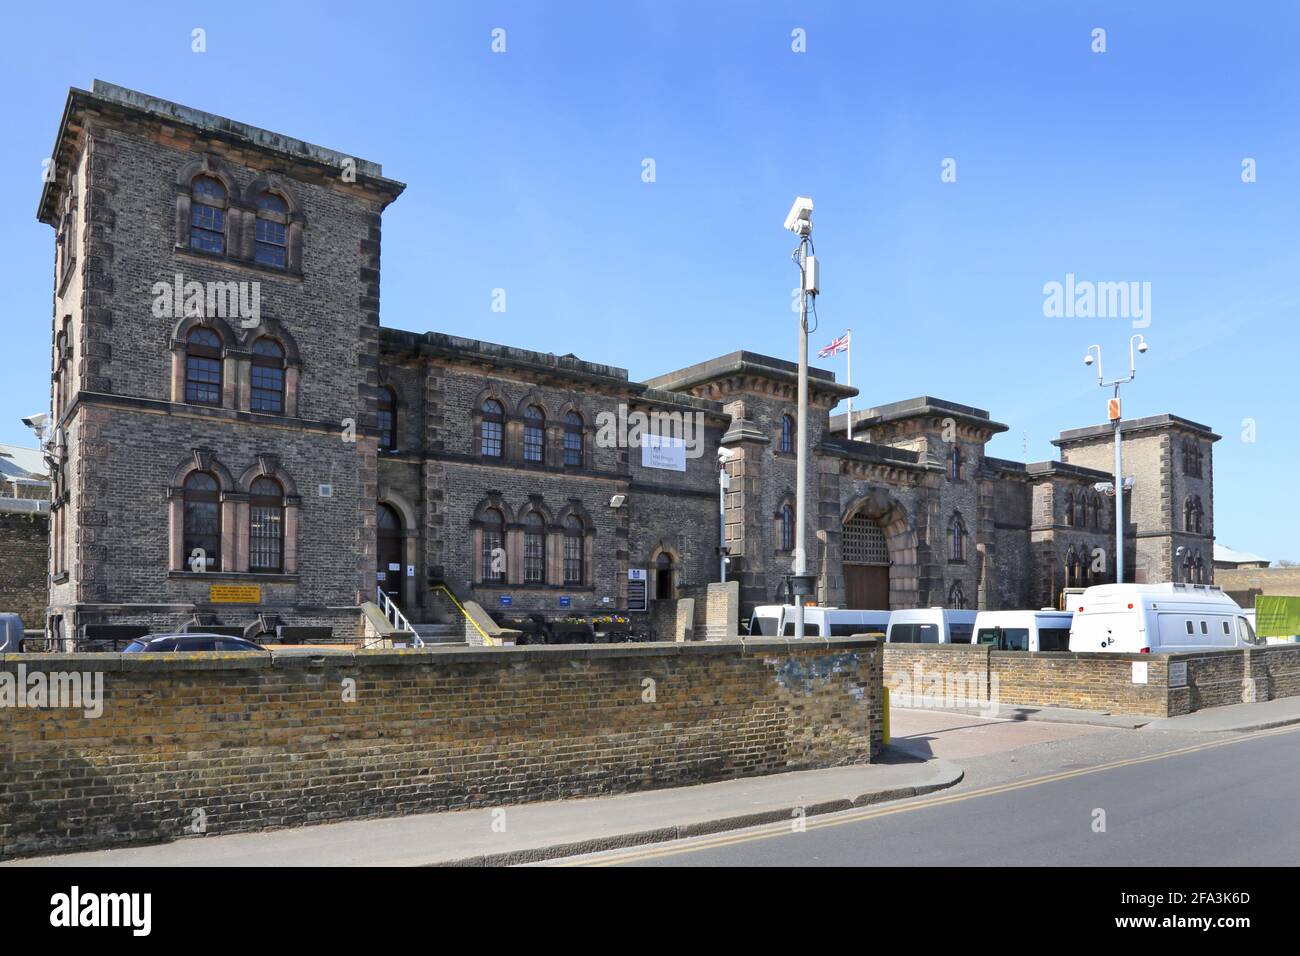 Wandsworth Prison, London, Großbritannien. Das viktorianische Gefängnis Catagory B beherbergt 1500 männliche Gefangene in einer wohlhabenden Gegend im Südwesten Londons. Stockfoto